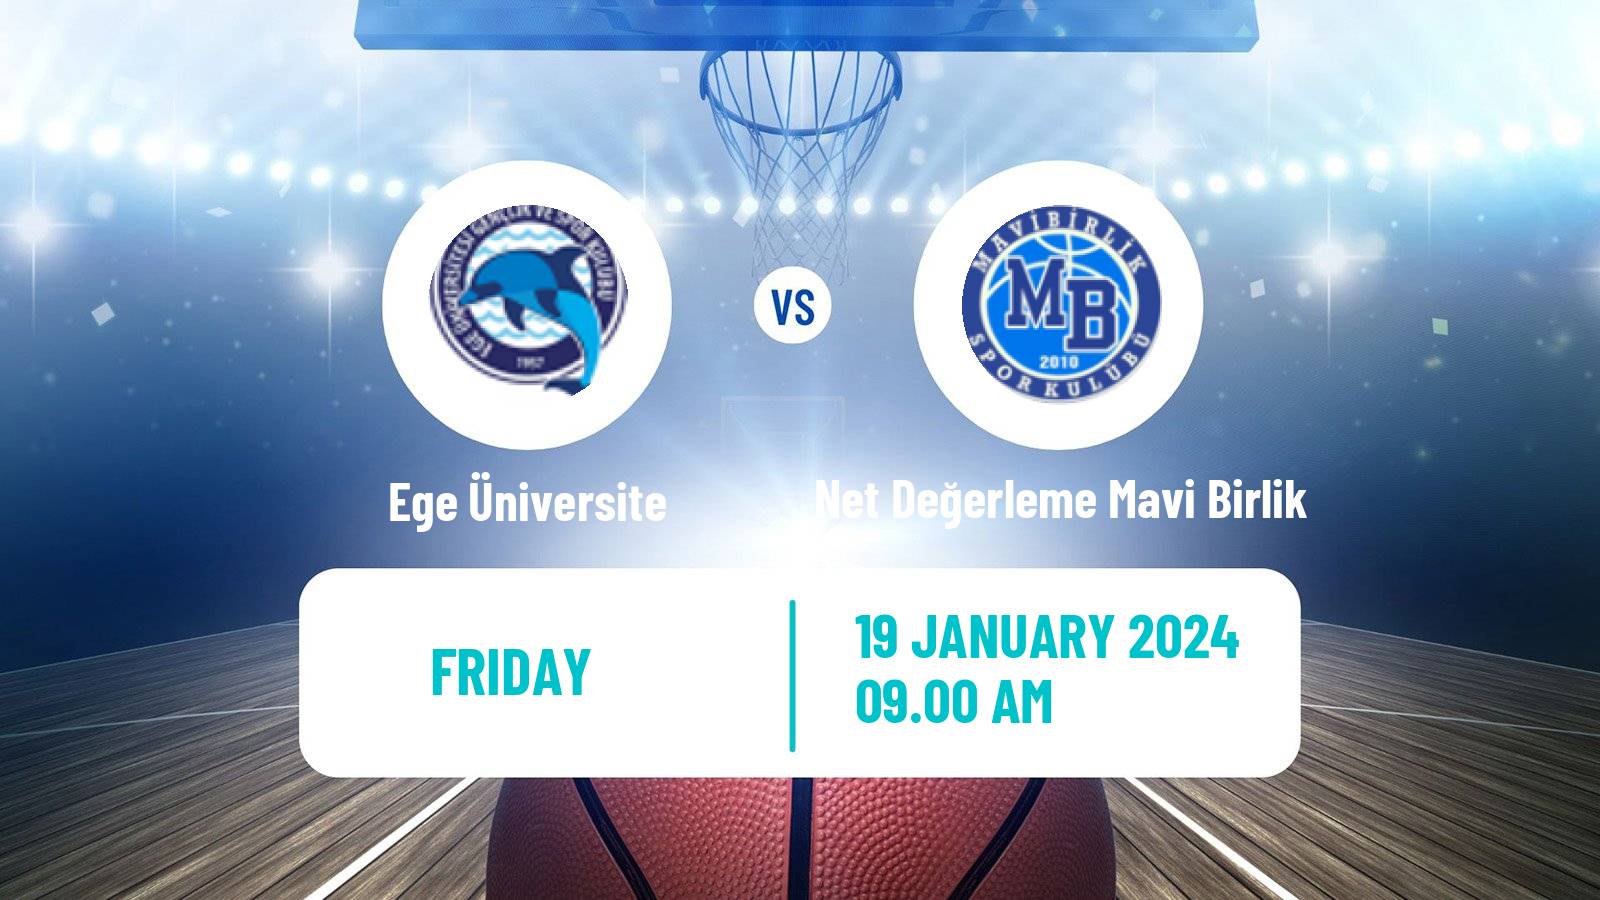 Basketball Turkish TB2L Ege Üniversite - Net Değerleme Mavi Birlik